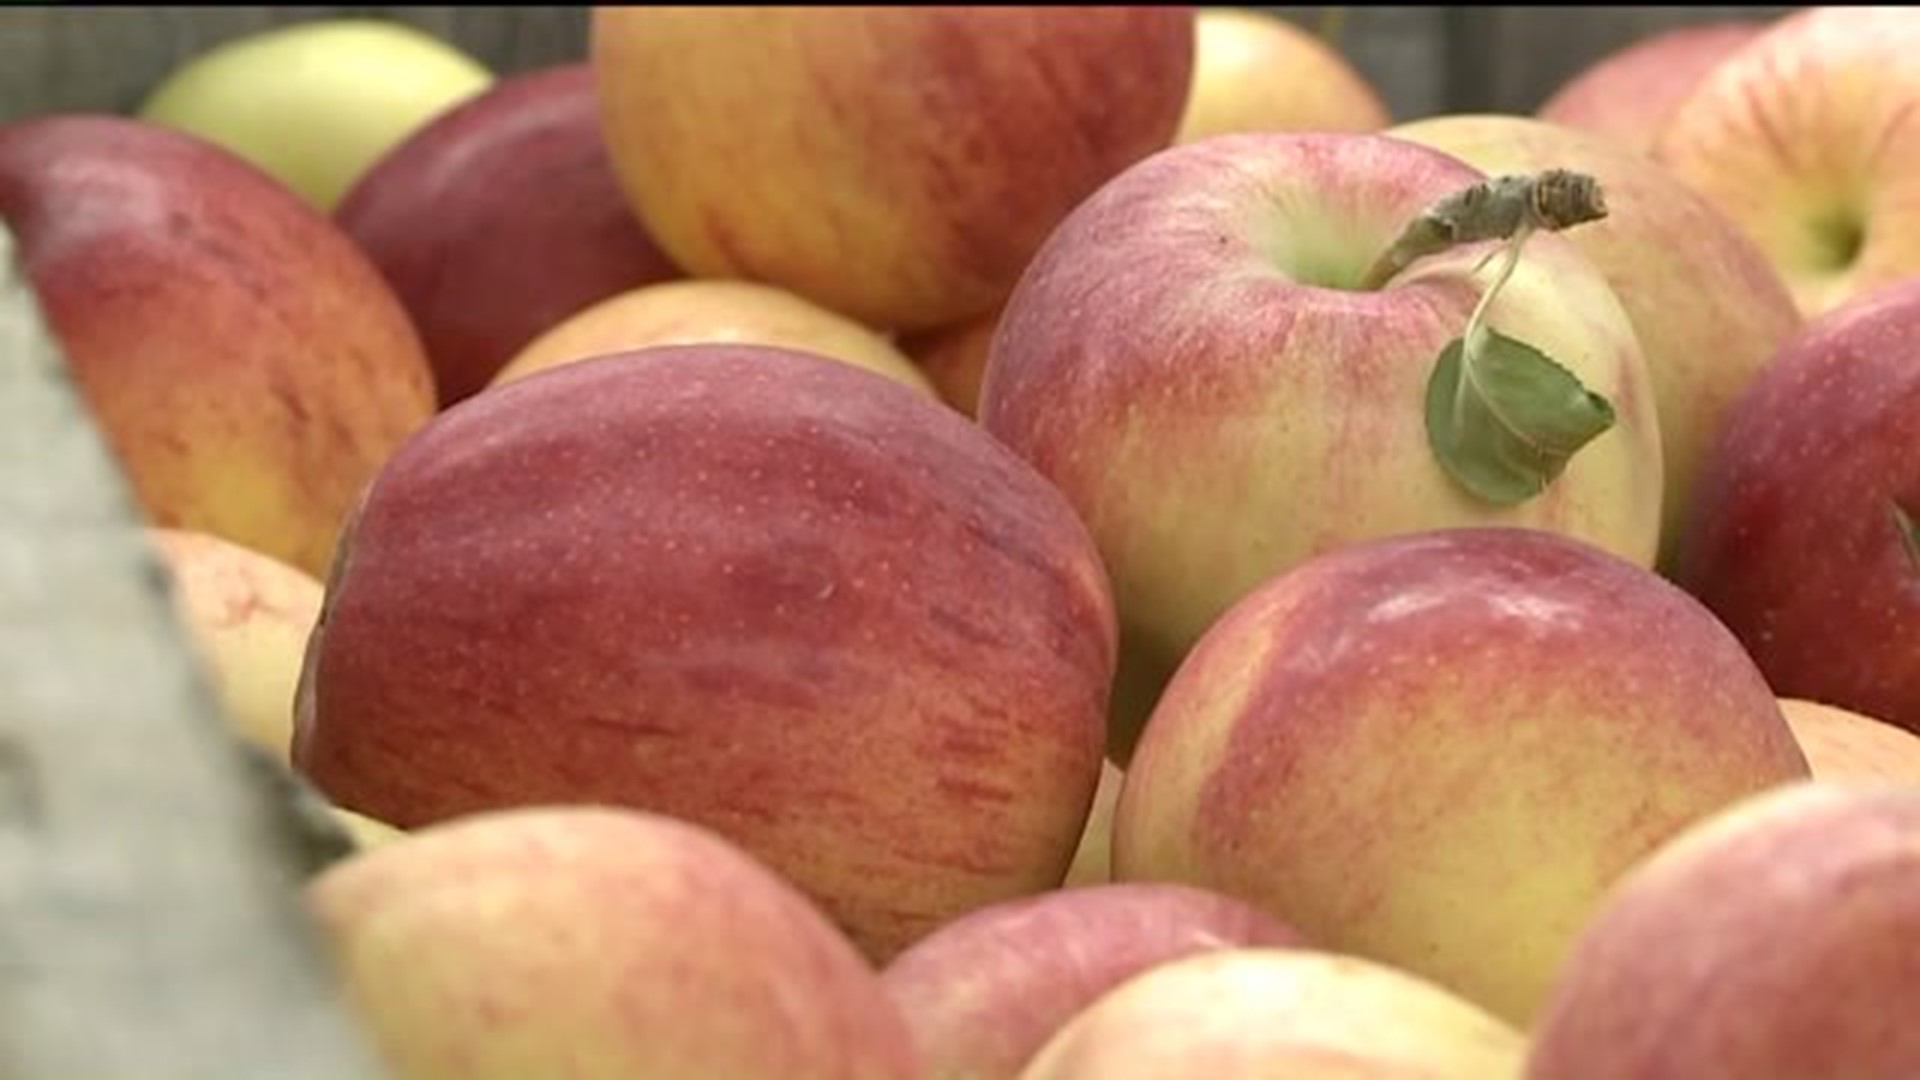 Fruit Farm Hit by Tornado Hopes to Flourish This Fall